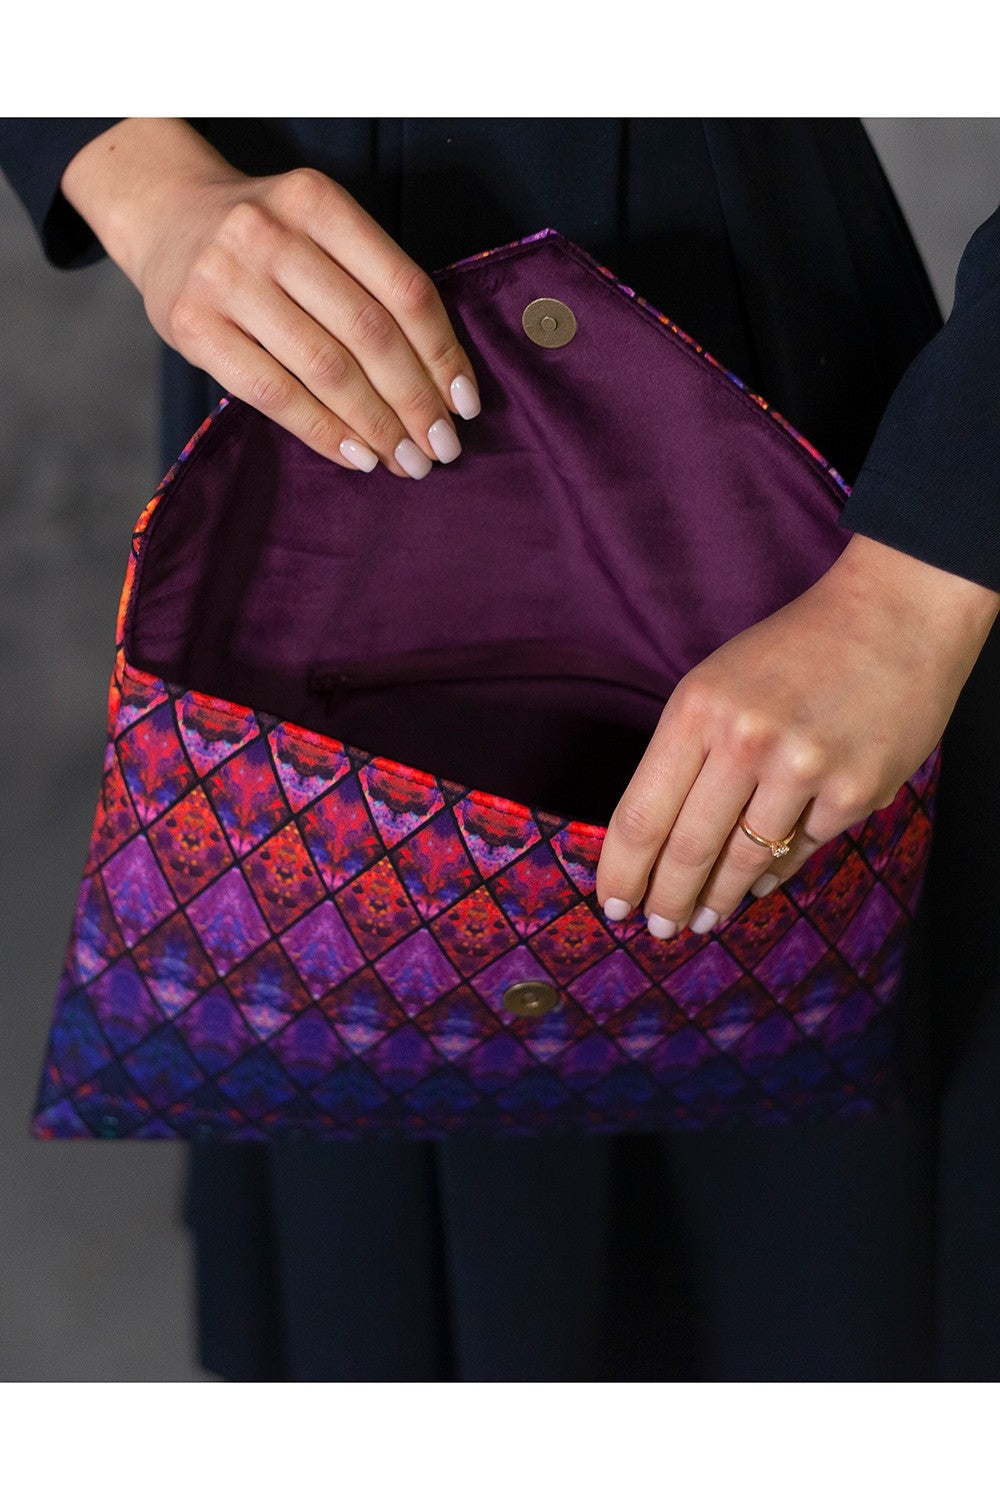 Handtasche mit bunten violetten Rauten 